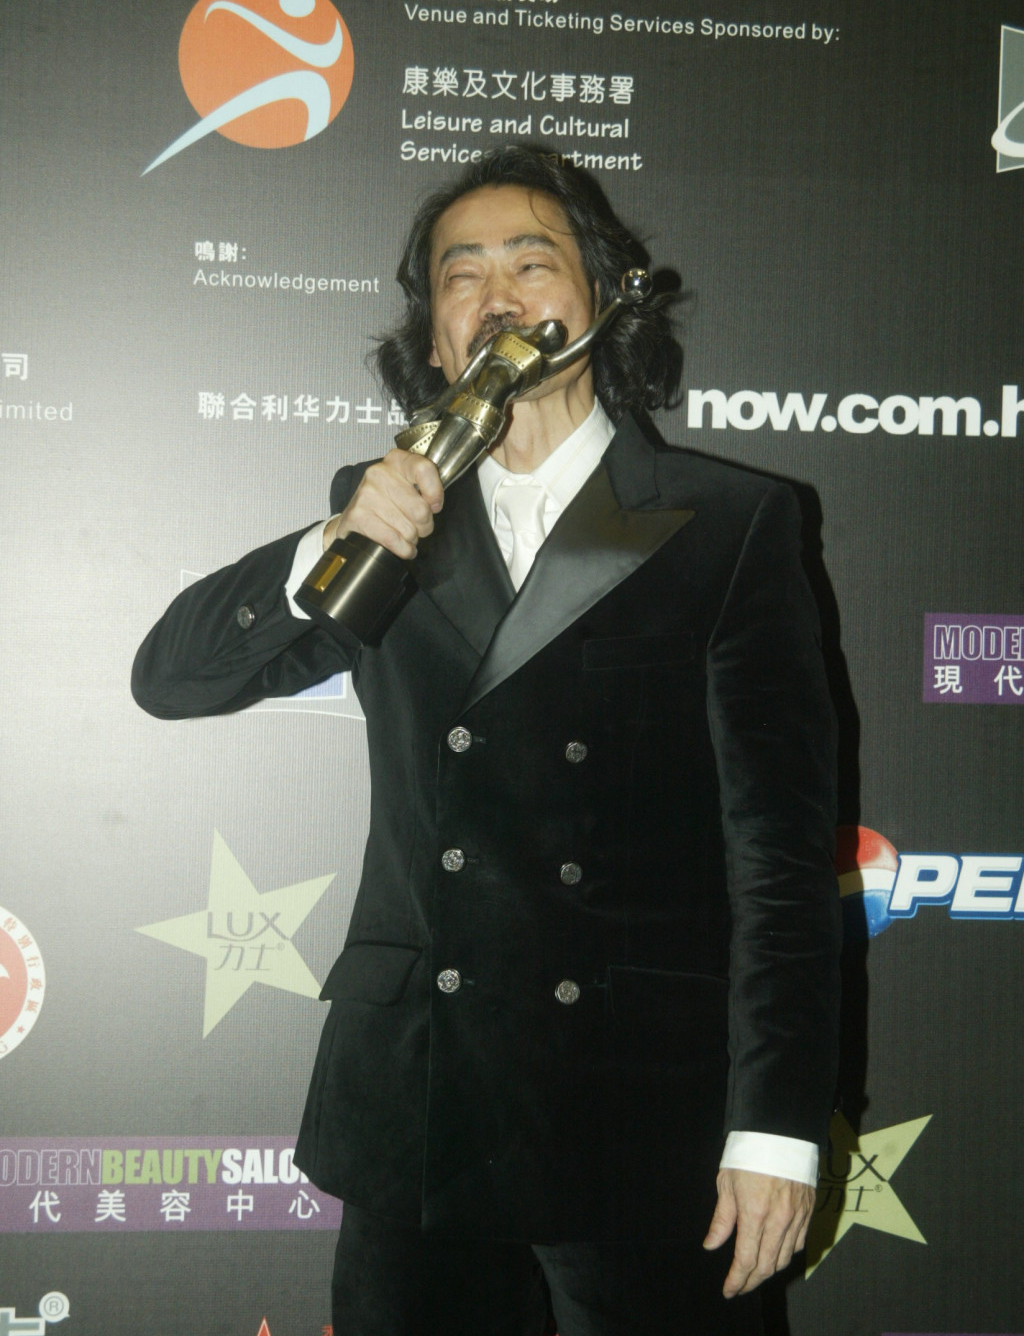 元华2005年凭电影《功夫》夺得香港电影金像奖及香港电影金紫荆奖最佳男配角。